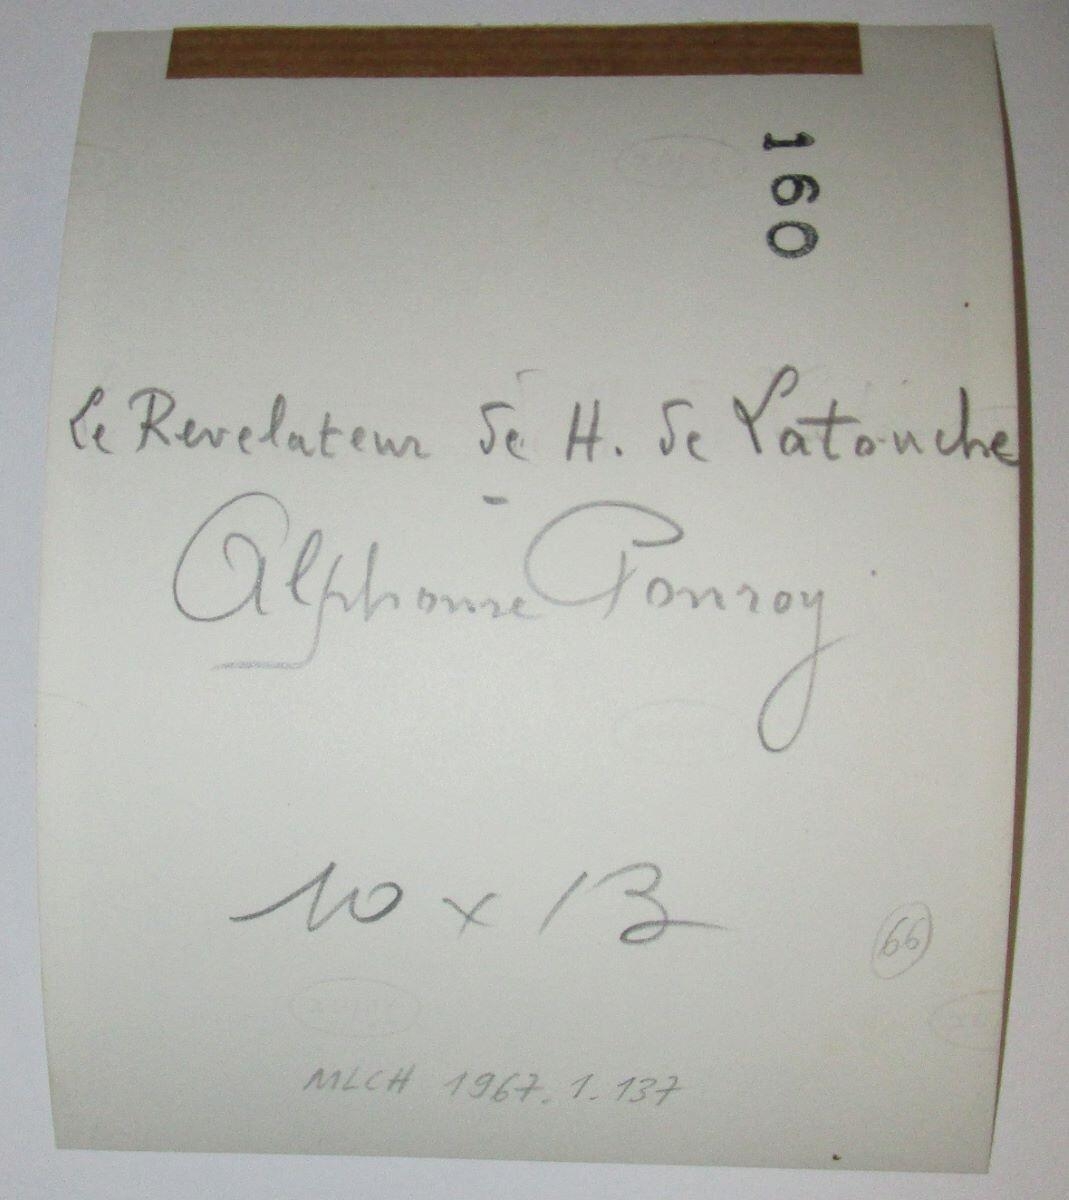 Alphonse PONROY (le révélateur de H. de LATOUCHE)